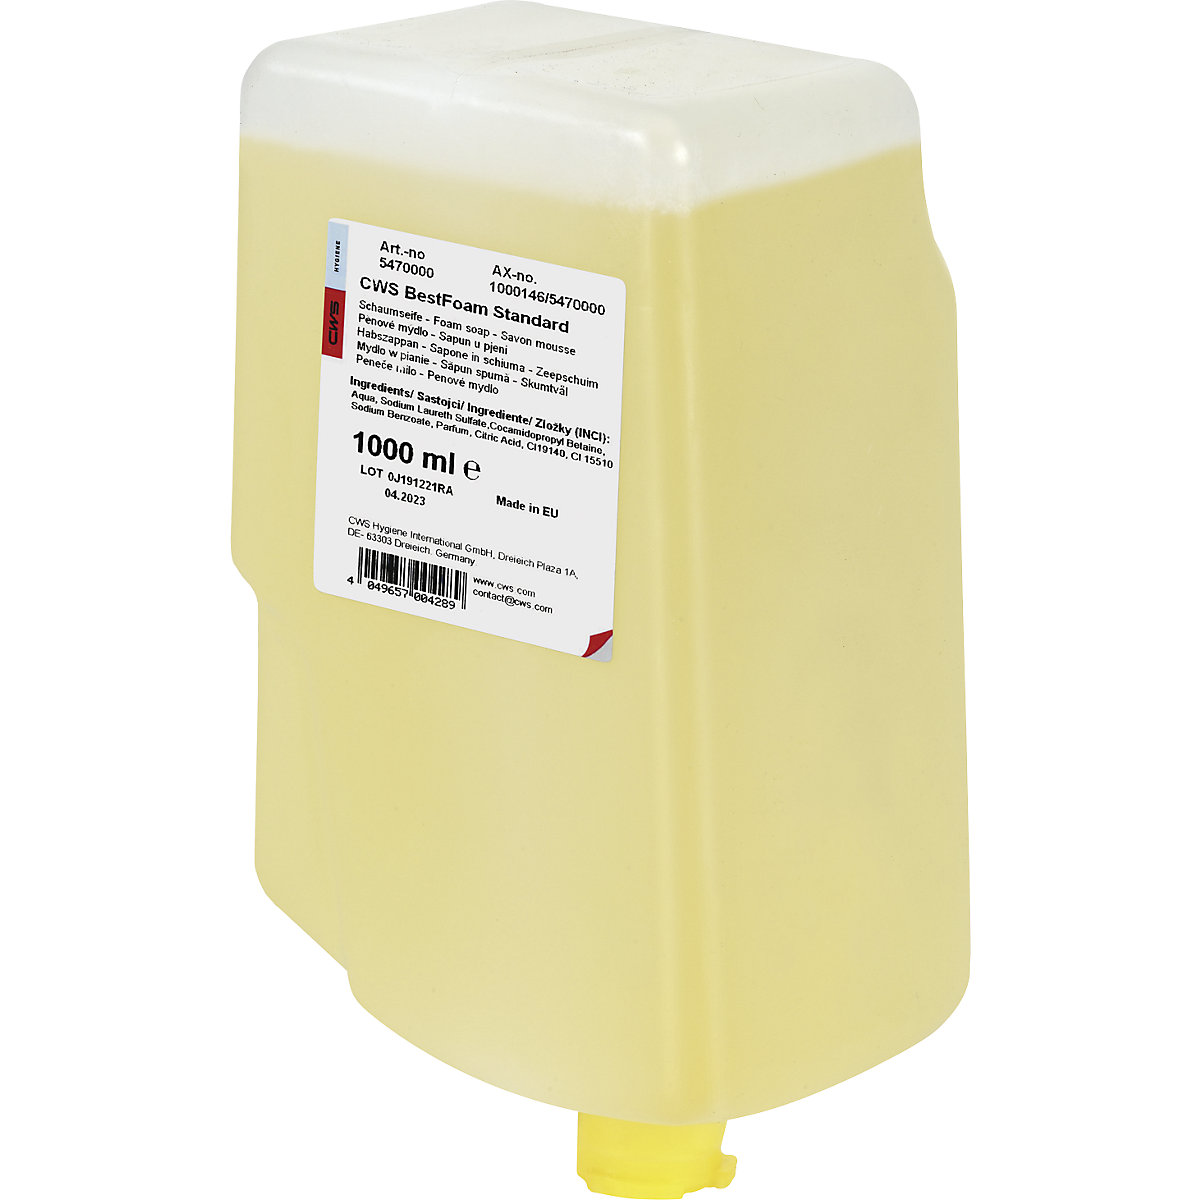 Best Foam foaming soap, gentle on the skin – CWS, pack of 12 bottles, 1 l each, standard, yellow-2